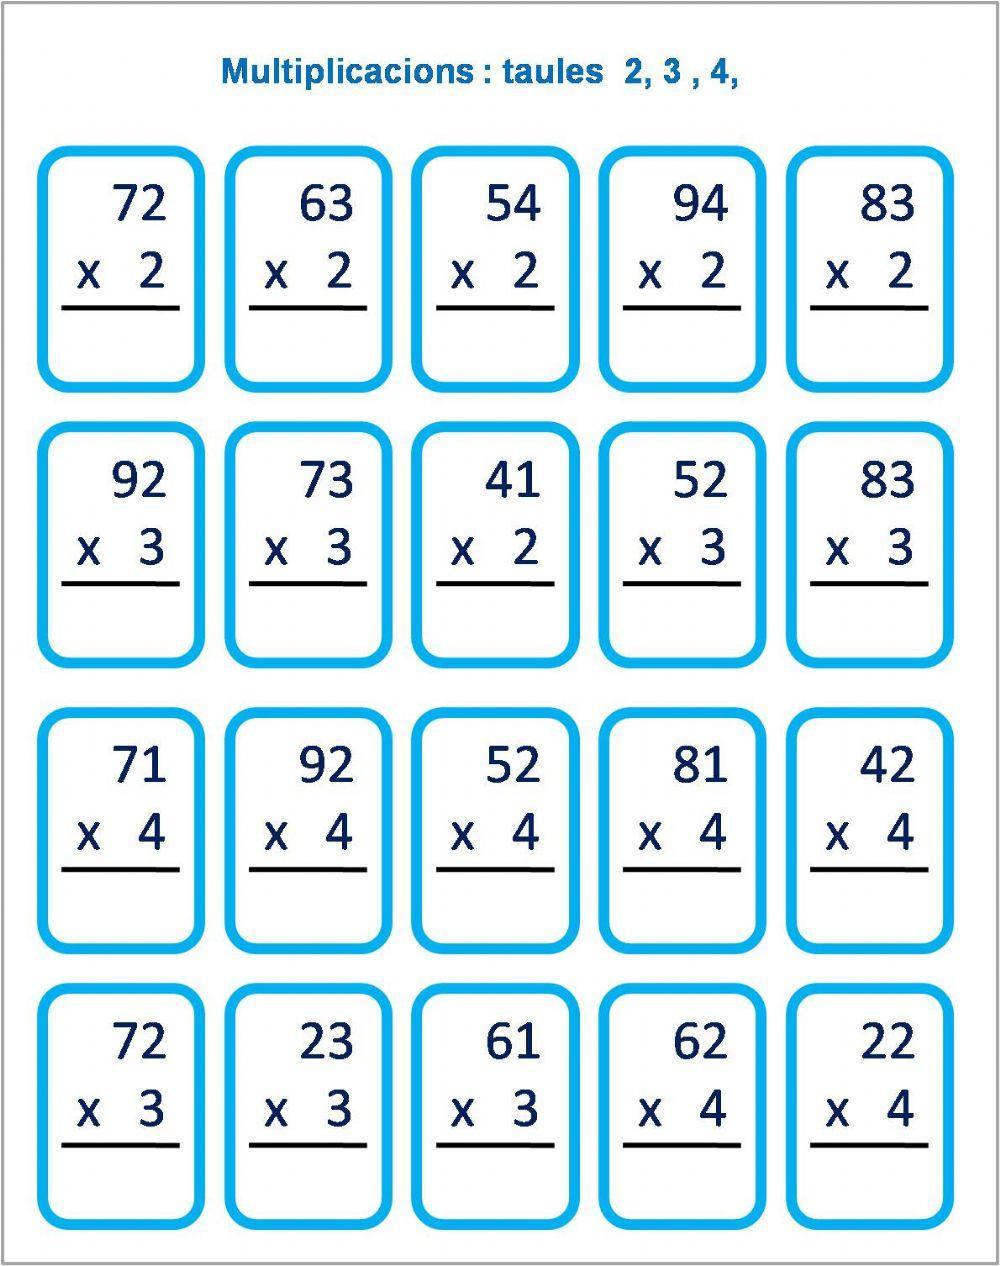 Multiplicacions taules 2, 3 y 4